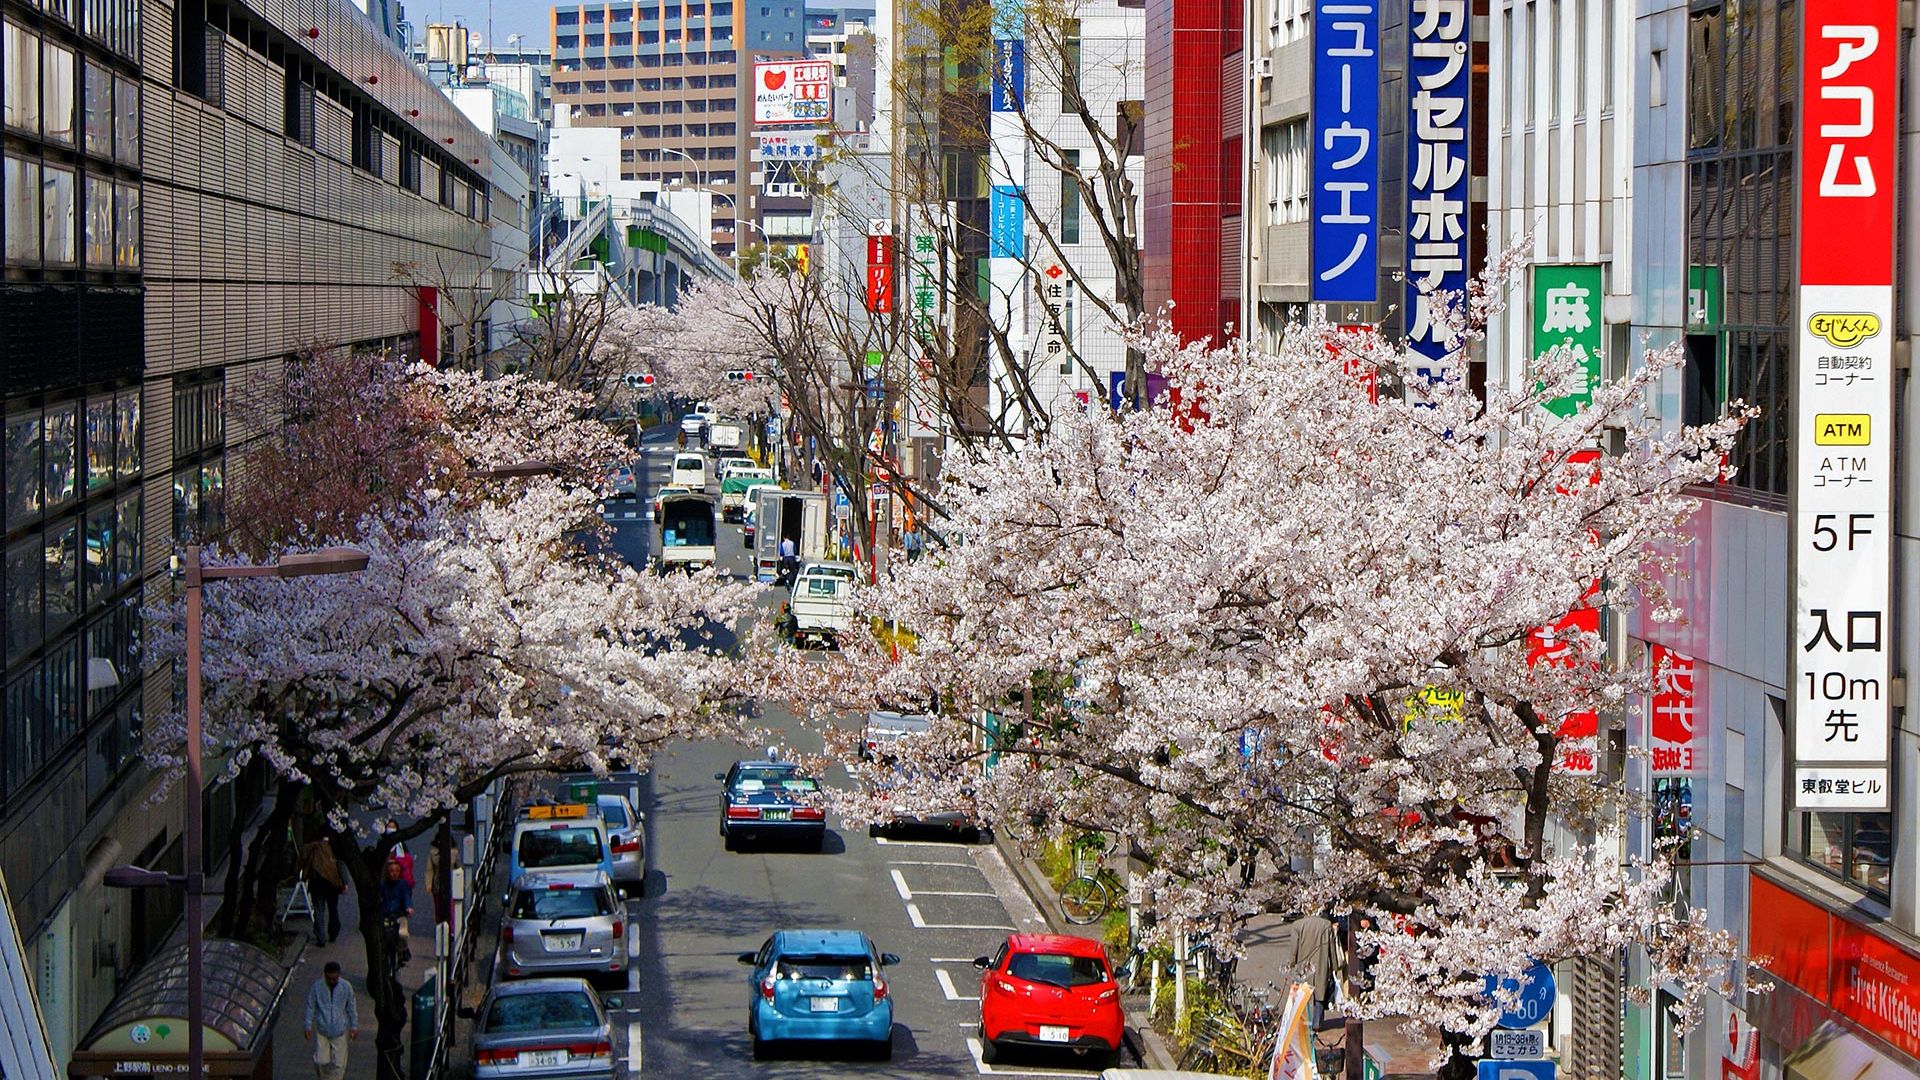 Circuit de grup - Sakura - Sarbatoarea ciresilor infloriti din Japonia, recomandat de Razvan Pascu, 10 zile - 26 martie 2023